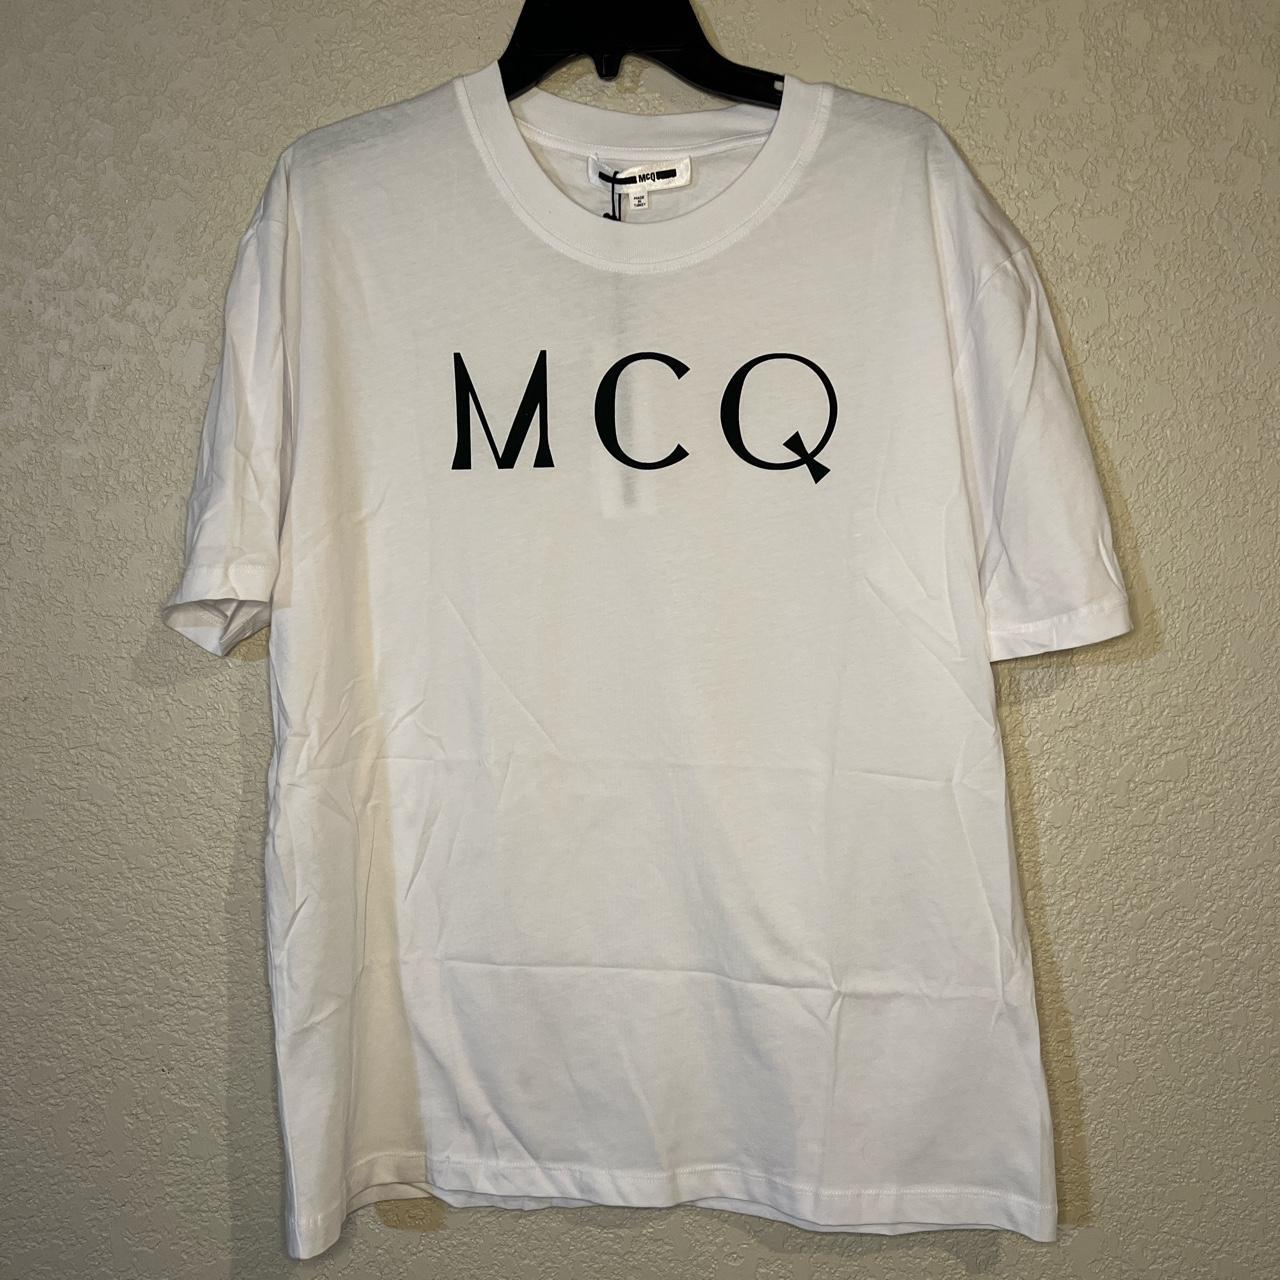 McQ Alexander McQueen Men's T-shirt